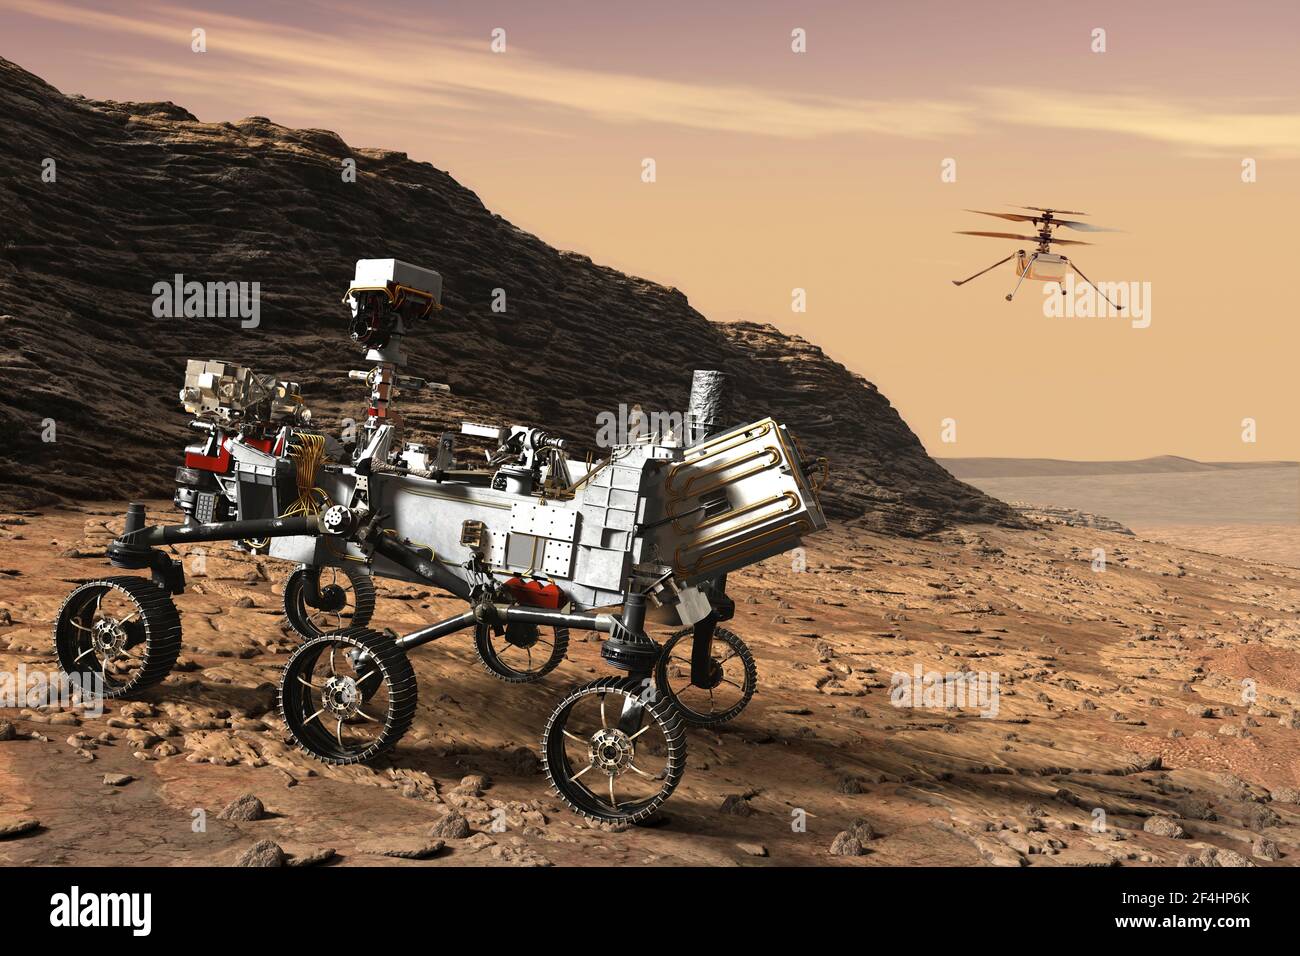 Mars Rover perseveranza atterrato e ingegno drone elementi di questo Immagine fornita dall'illustrazione 3D della NASA Foto Stock